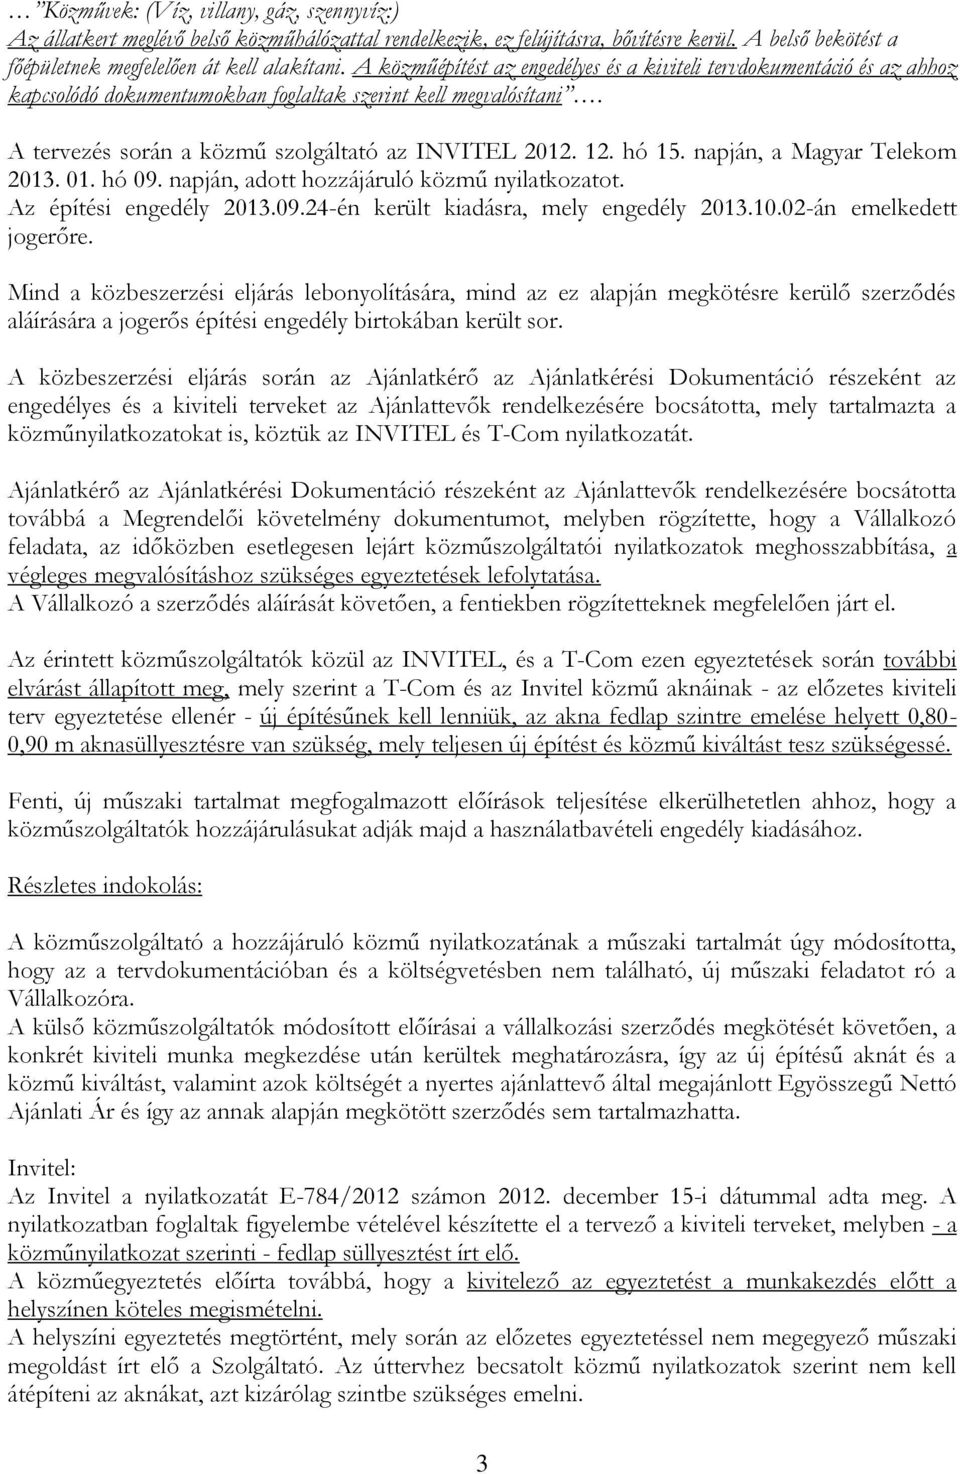 hó 15. napján, a Magyar Telekom 2013. 01. hó 09. napján, adott hozzájáruló közmű nyilatkozatot. Az építési engedély 2013.09.24-én került kiadásra, mely engedély 2013.10.02-án emelkedett jogerőre.